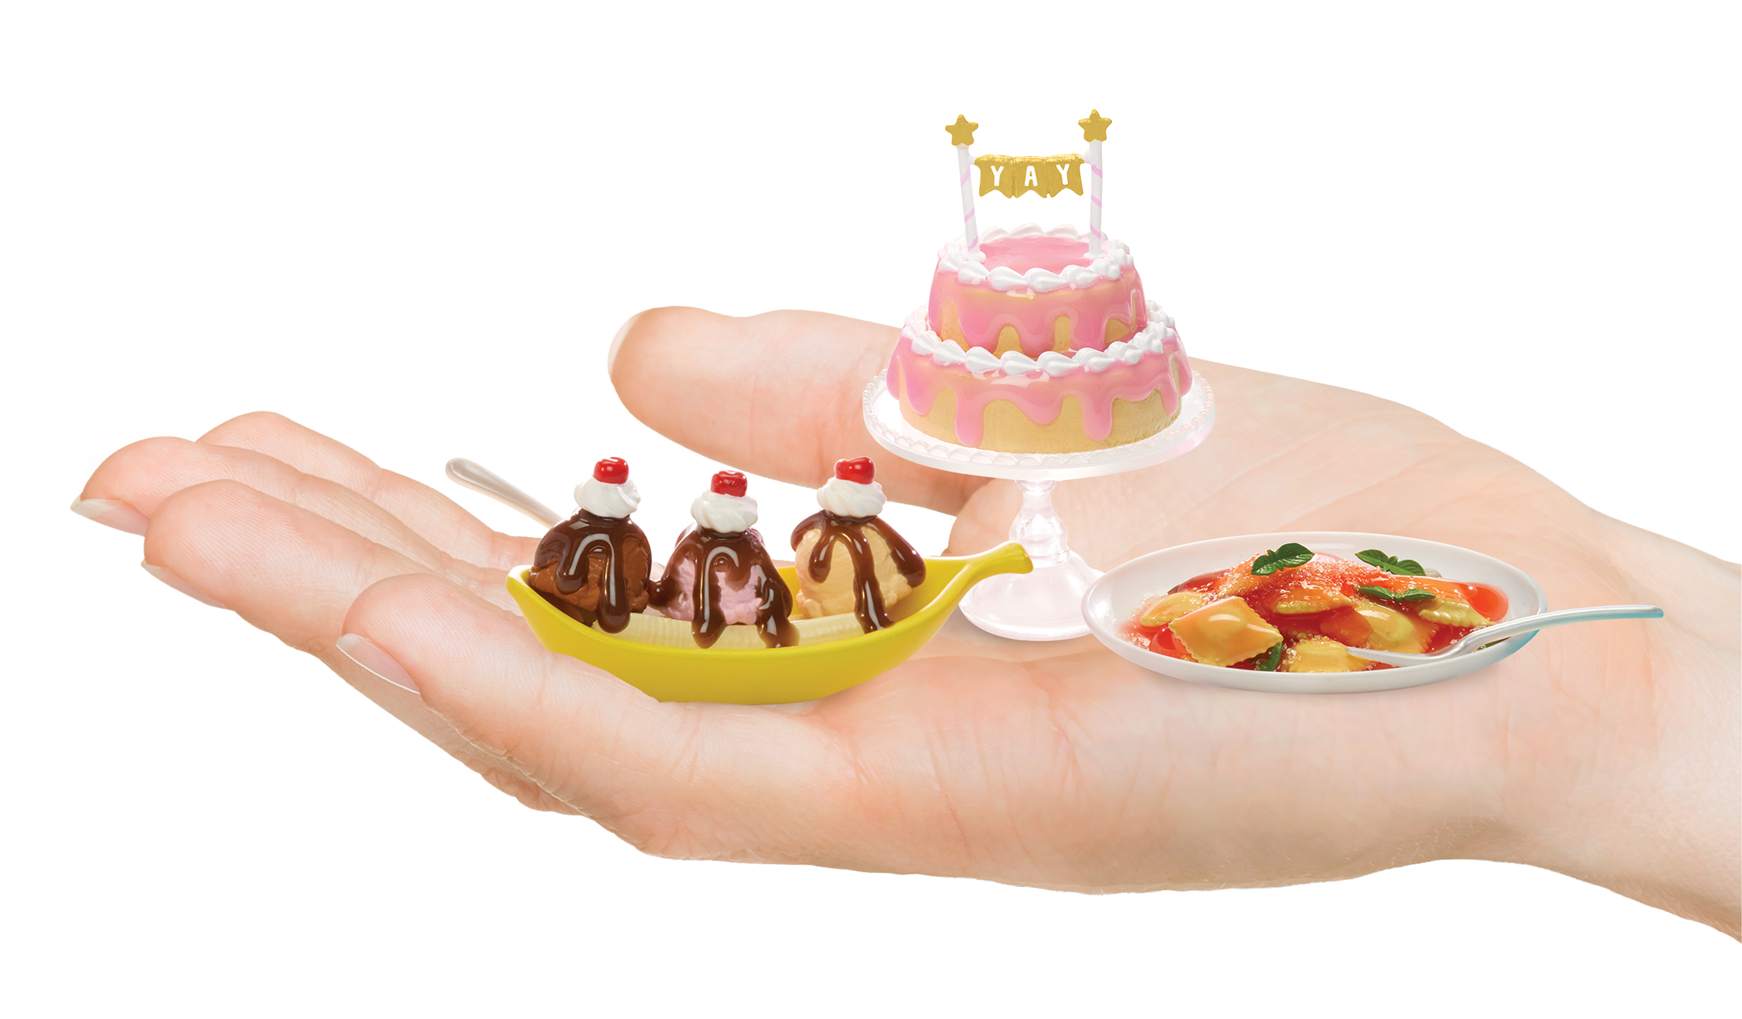 Mga's miniverse-mini food diner serie 2 – gioco di resina in una palla a sorpresa - scopri gli ingredienti e gli accessori da cucina a sorpresa, 12 mini cibi da creare e collezionare – assortimento casuale - 